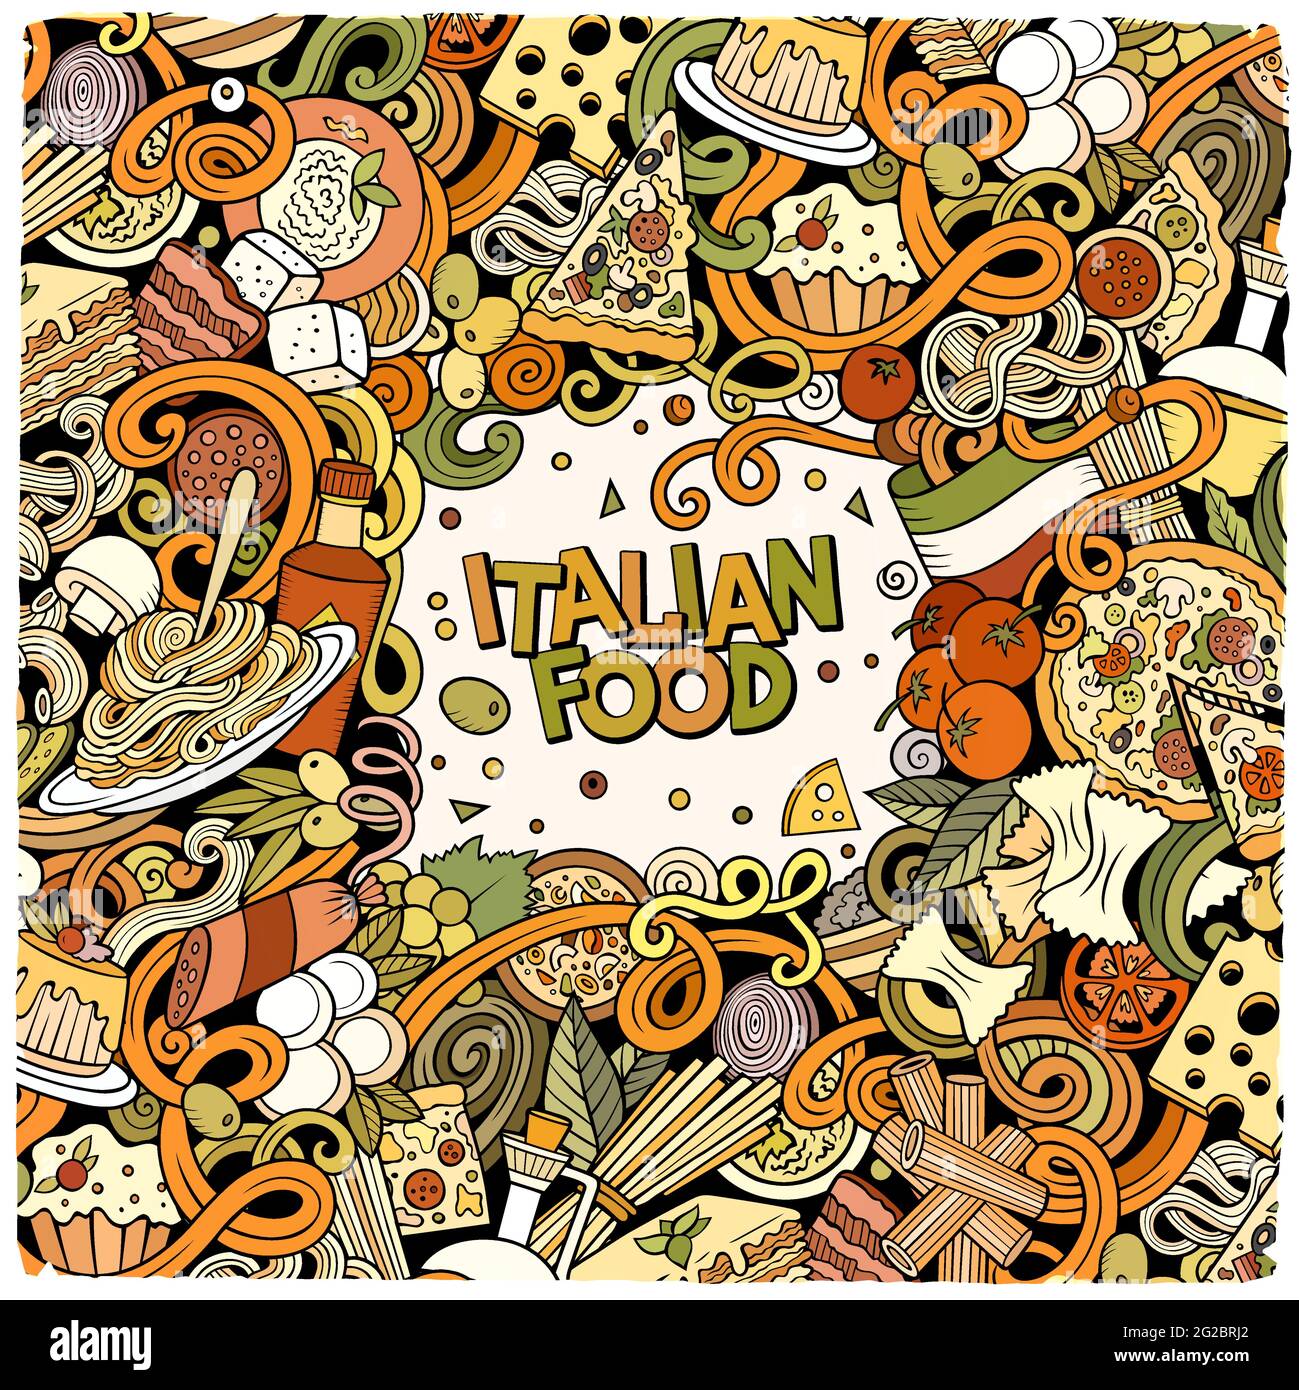 Cartoon-Vektor kritzelt italienischen Lebensmittelrahmen. Bunt, detailreich, mit vielen Objekten im Hintergrund. Alle Objekte getrennt. Helle Farben italienische Küche funn Stock Vektor